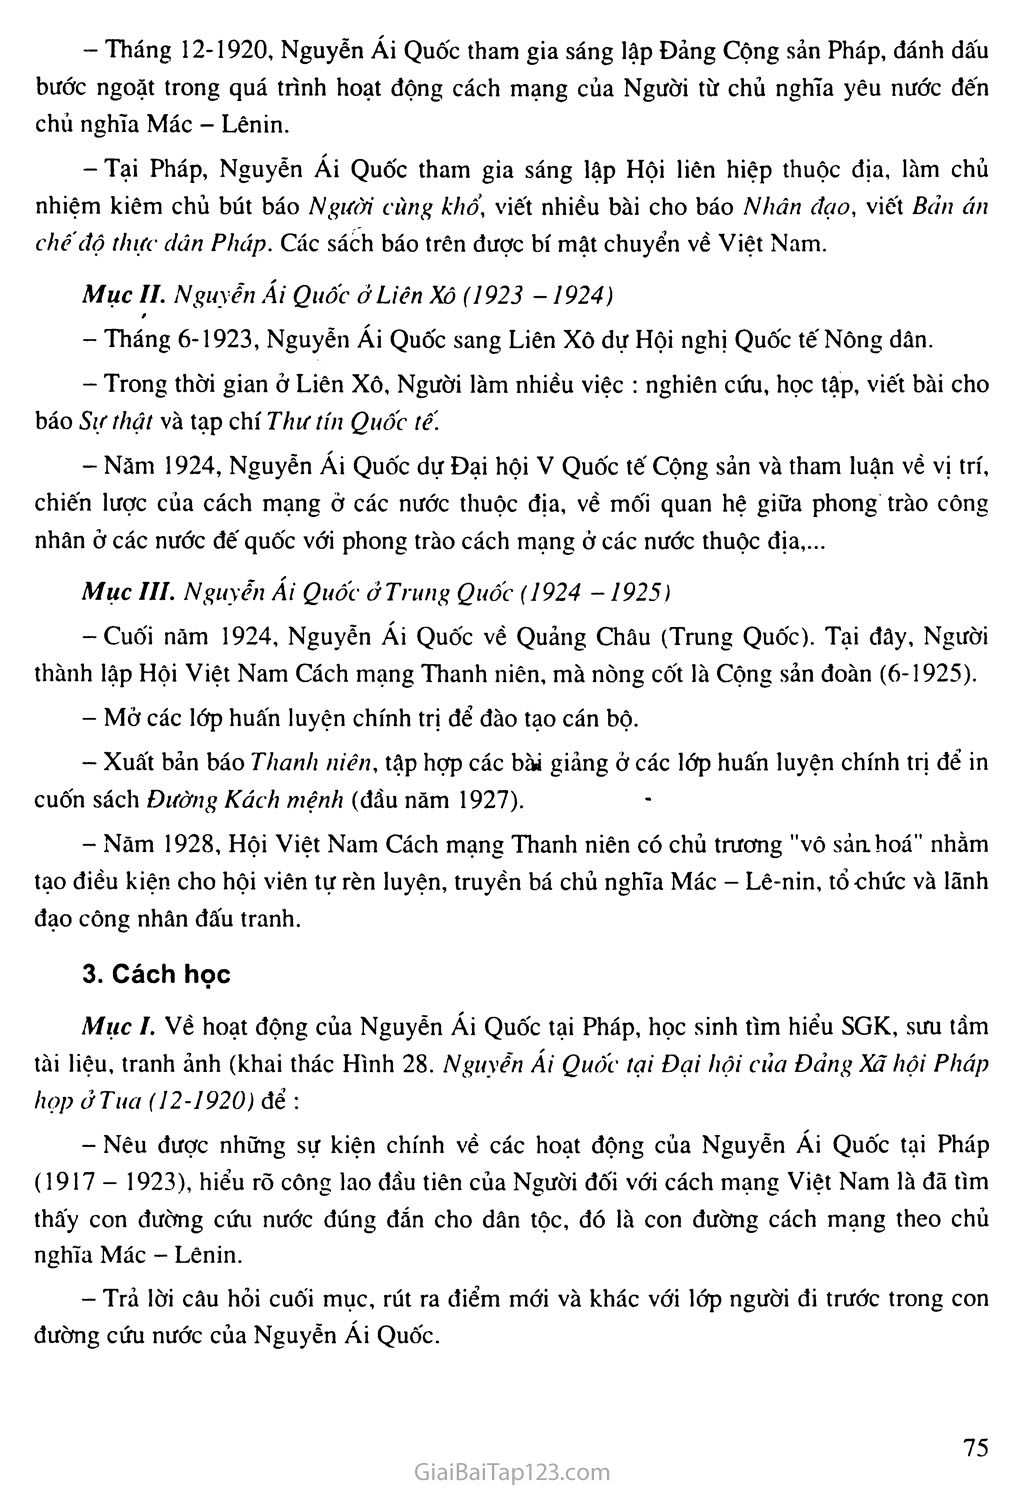 Bài 16: Hoạt động của Nguyễn Ái Quốc ở nước ngoài trong những năm 1919 - 1925 trang 2